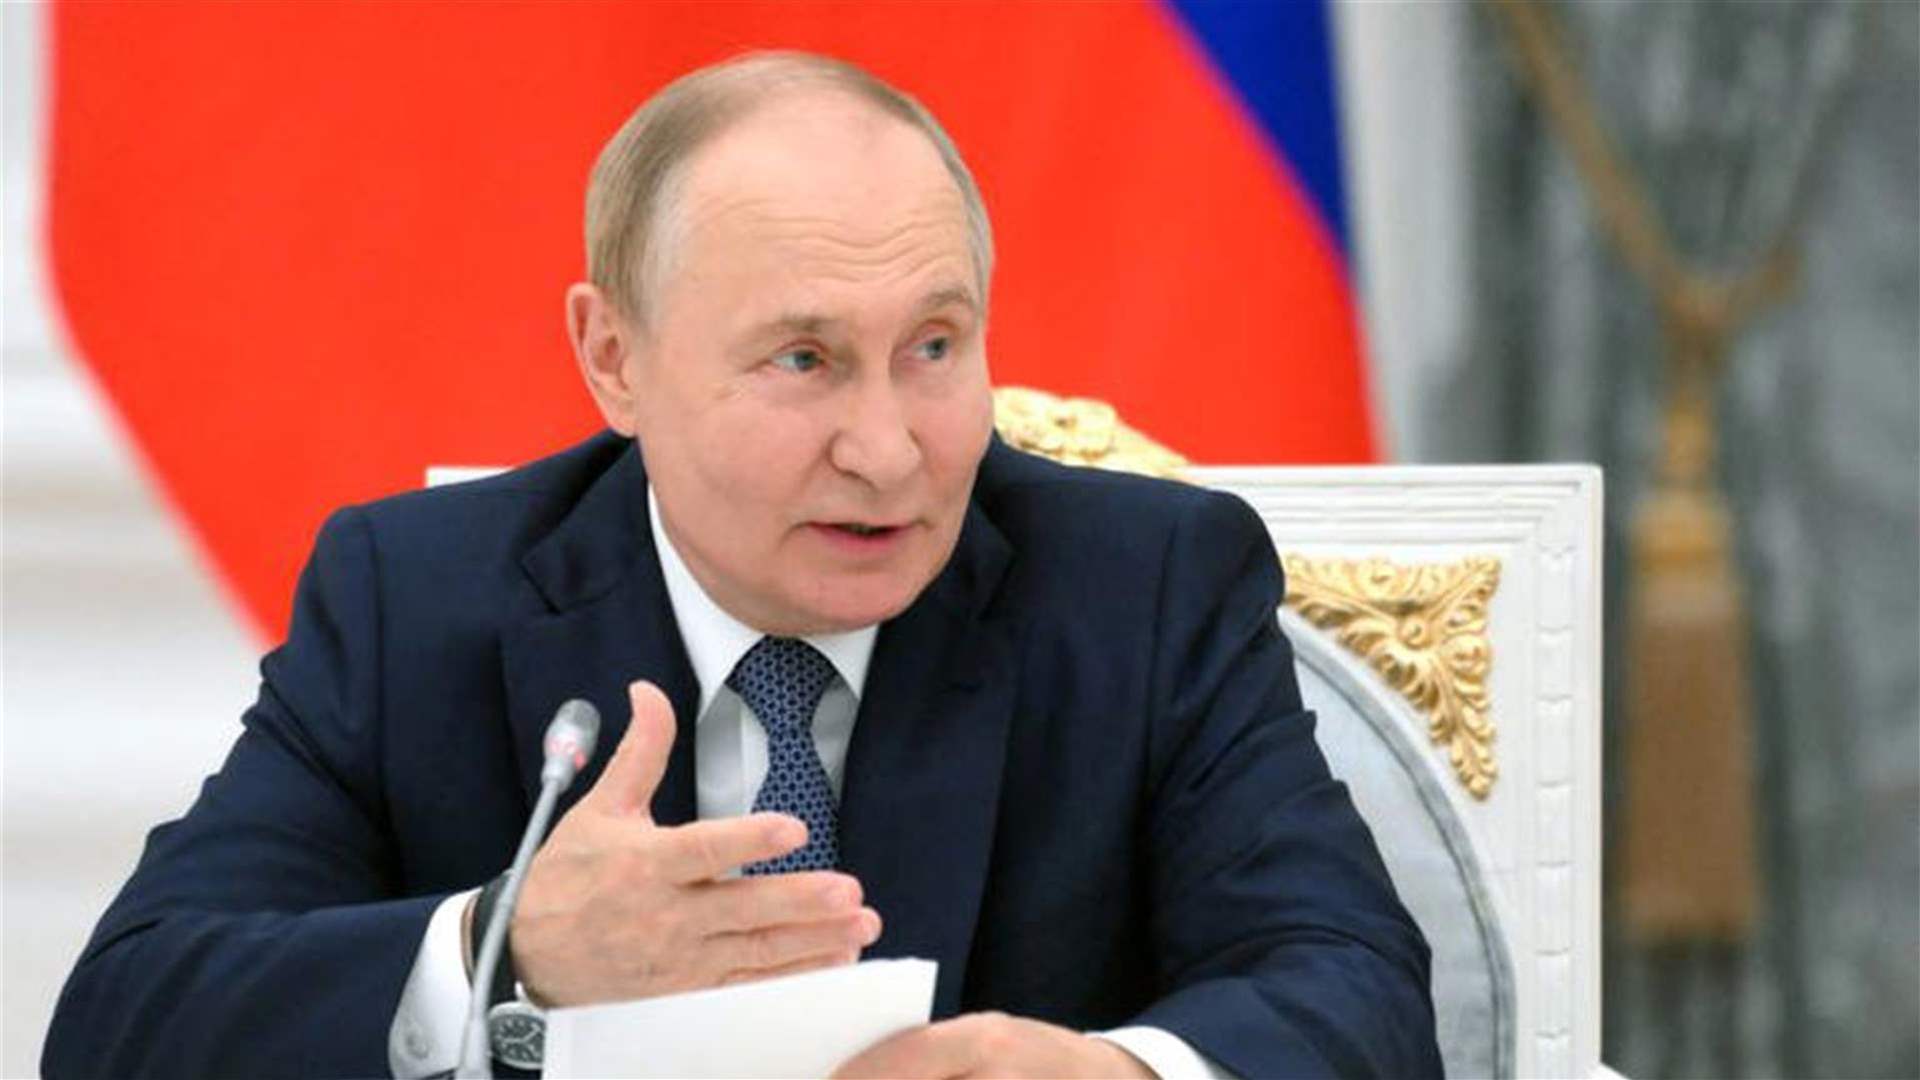 بوتين يحذر الولايات المتحدة من أزمة صواريخ شبيهة في الحرب الباردة